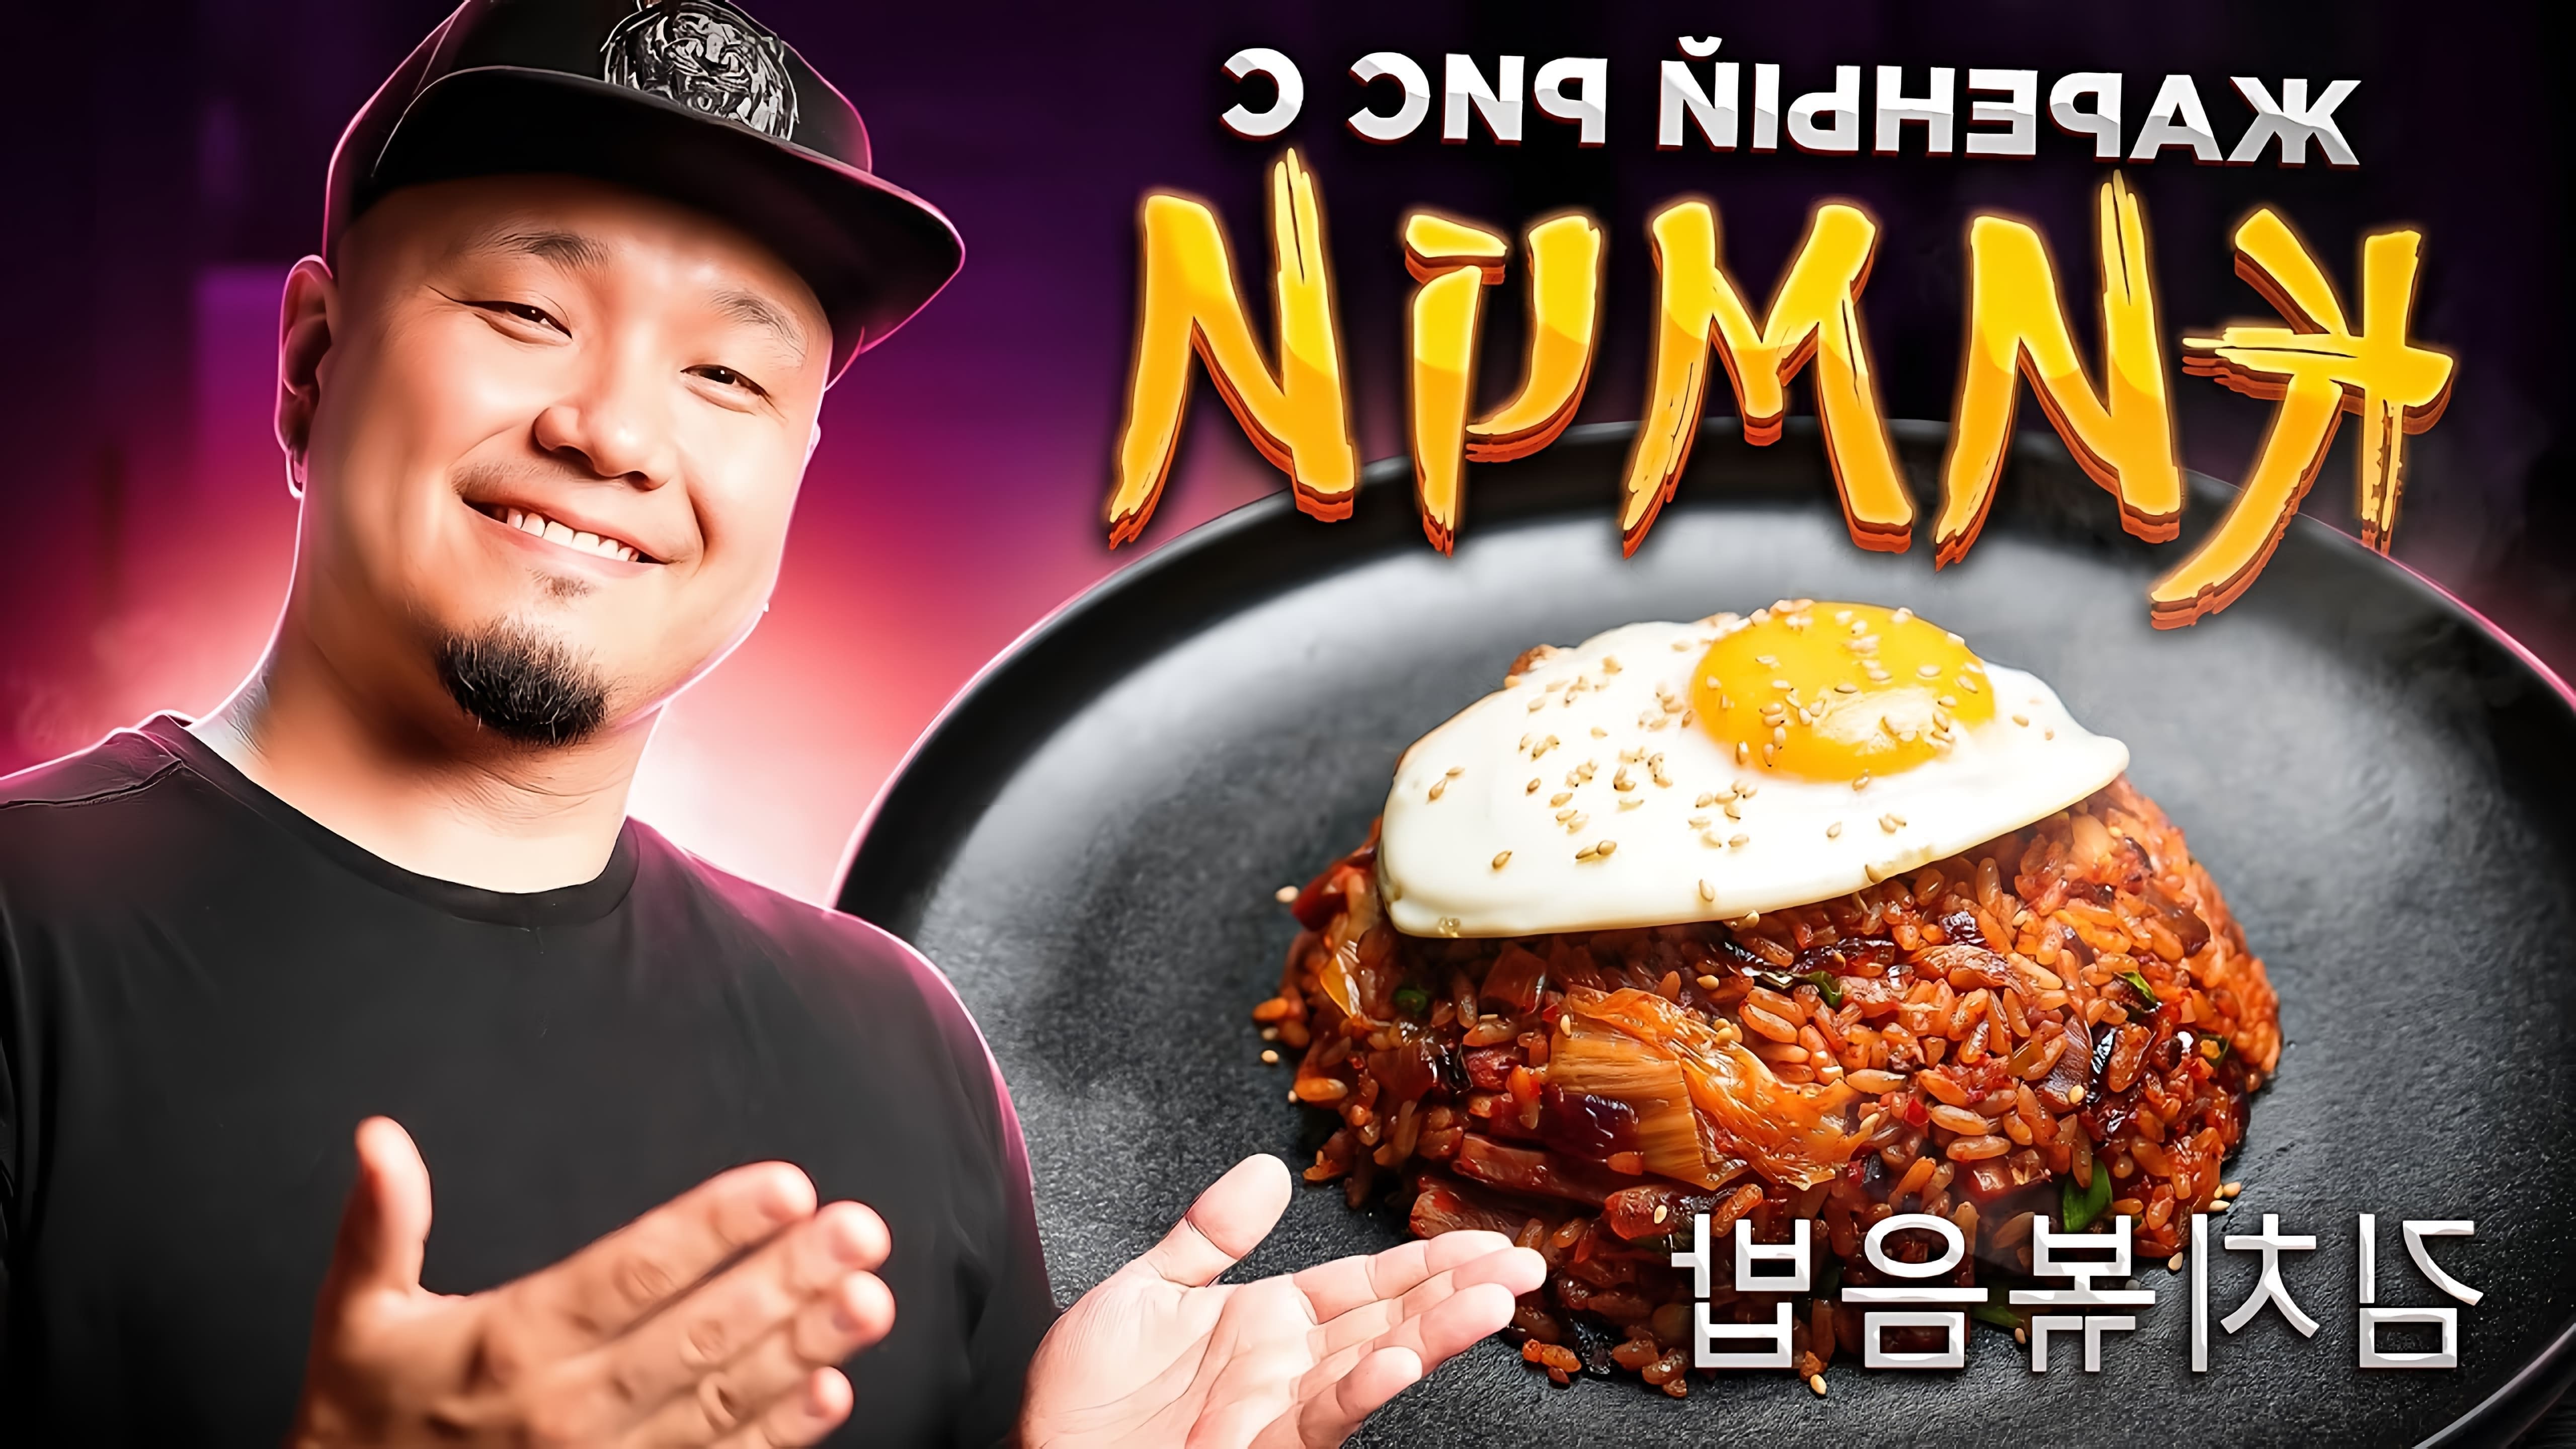 В этом видео демонстрируется рецепт приготовления популярного корейского блюда - Кимчи Поккымпаб, или жареный рис с кимчи